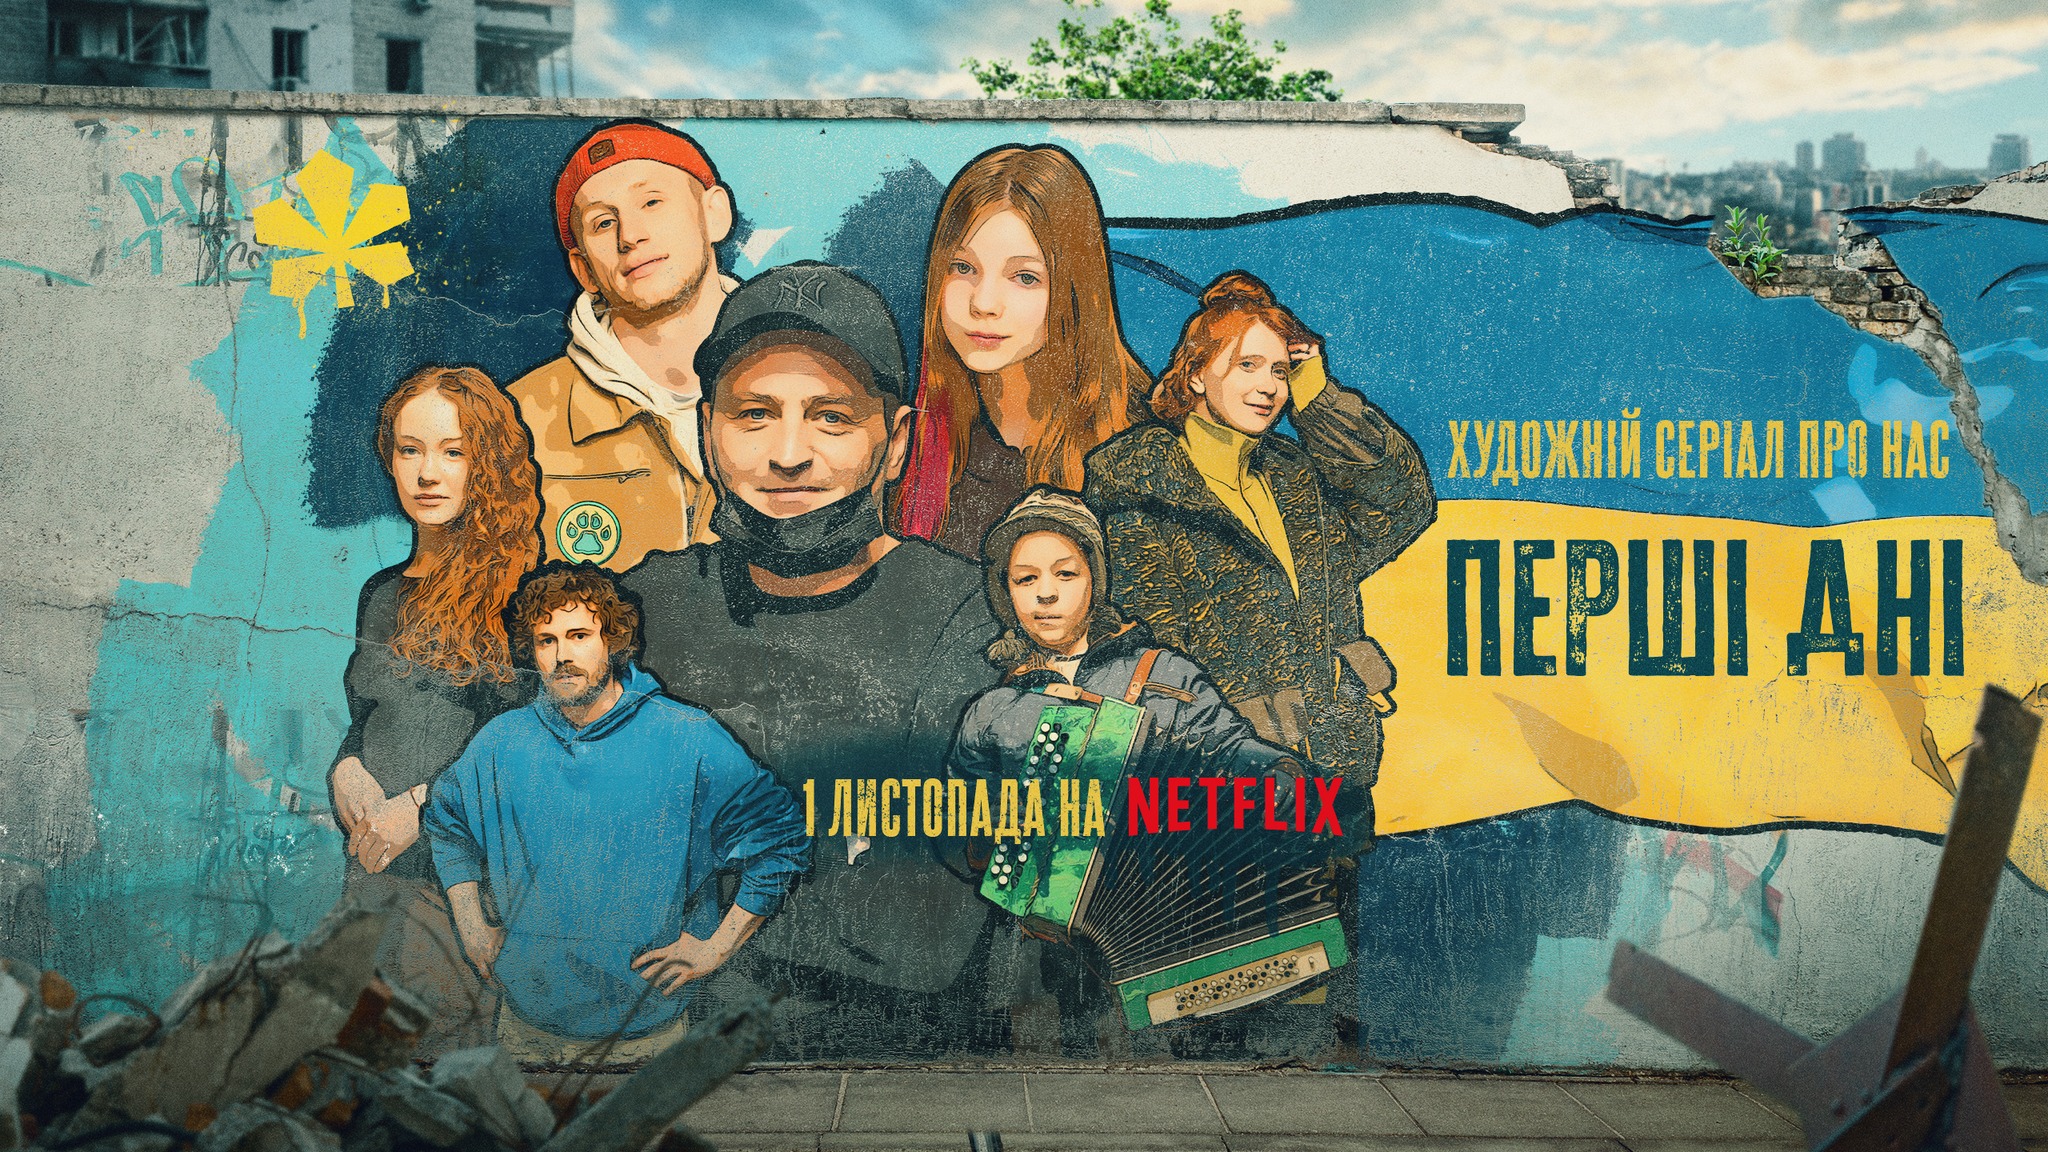 “Перші дні”: на Netflix розпочинається прем'єра українського серіалу про початок повномасштабного вторгнення рф в Україну (трейлер)